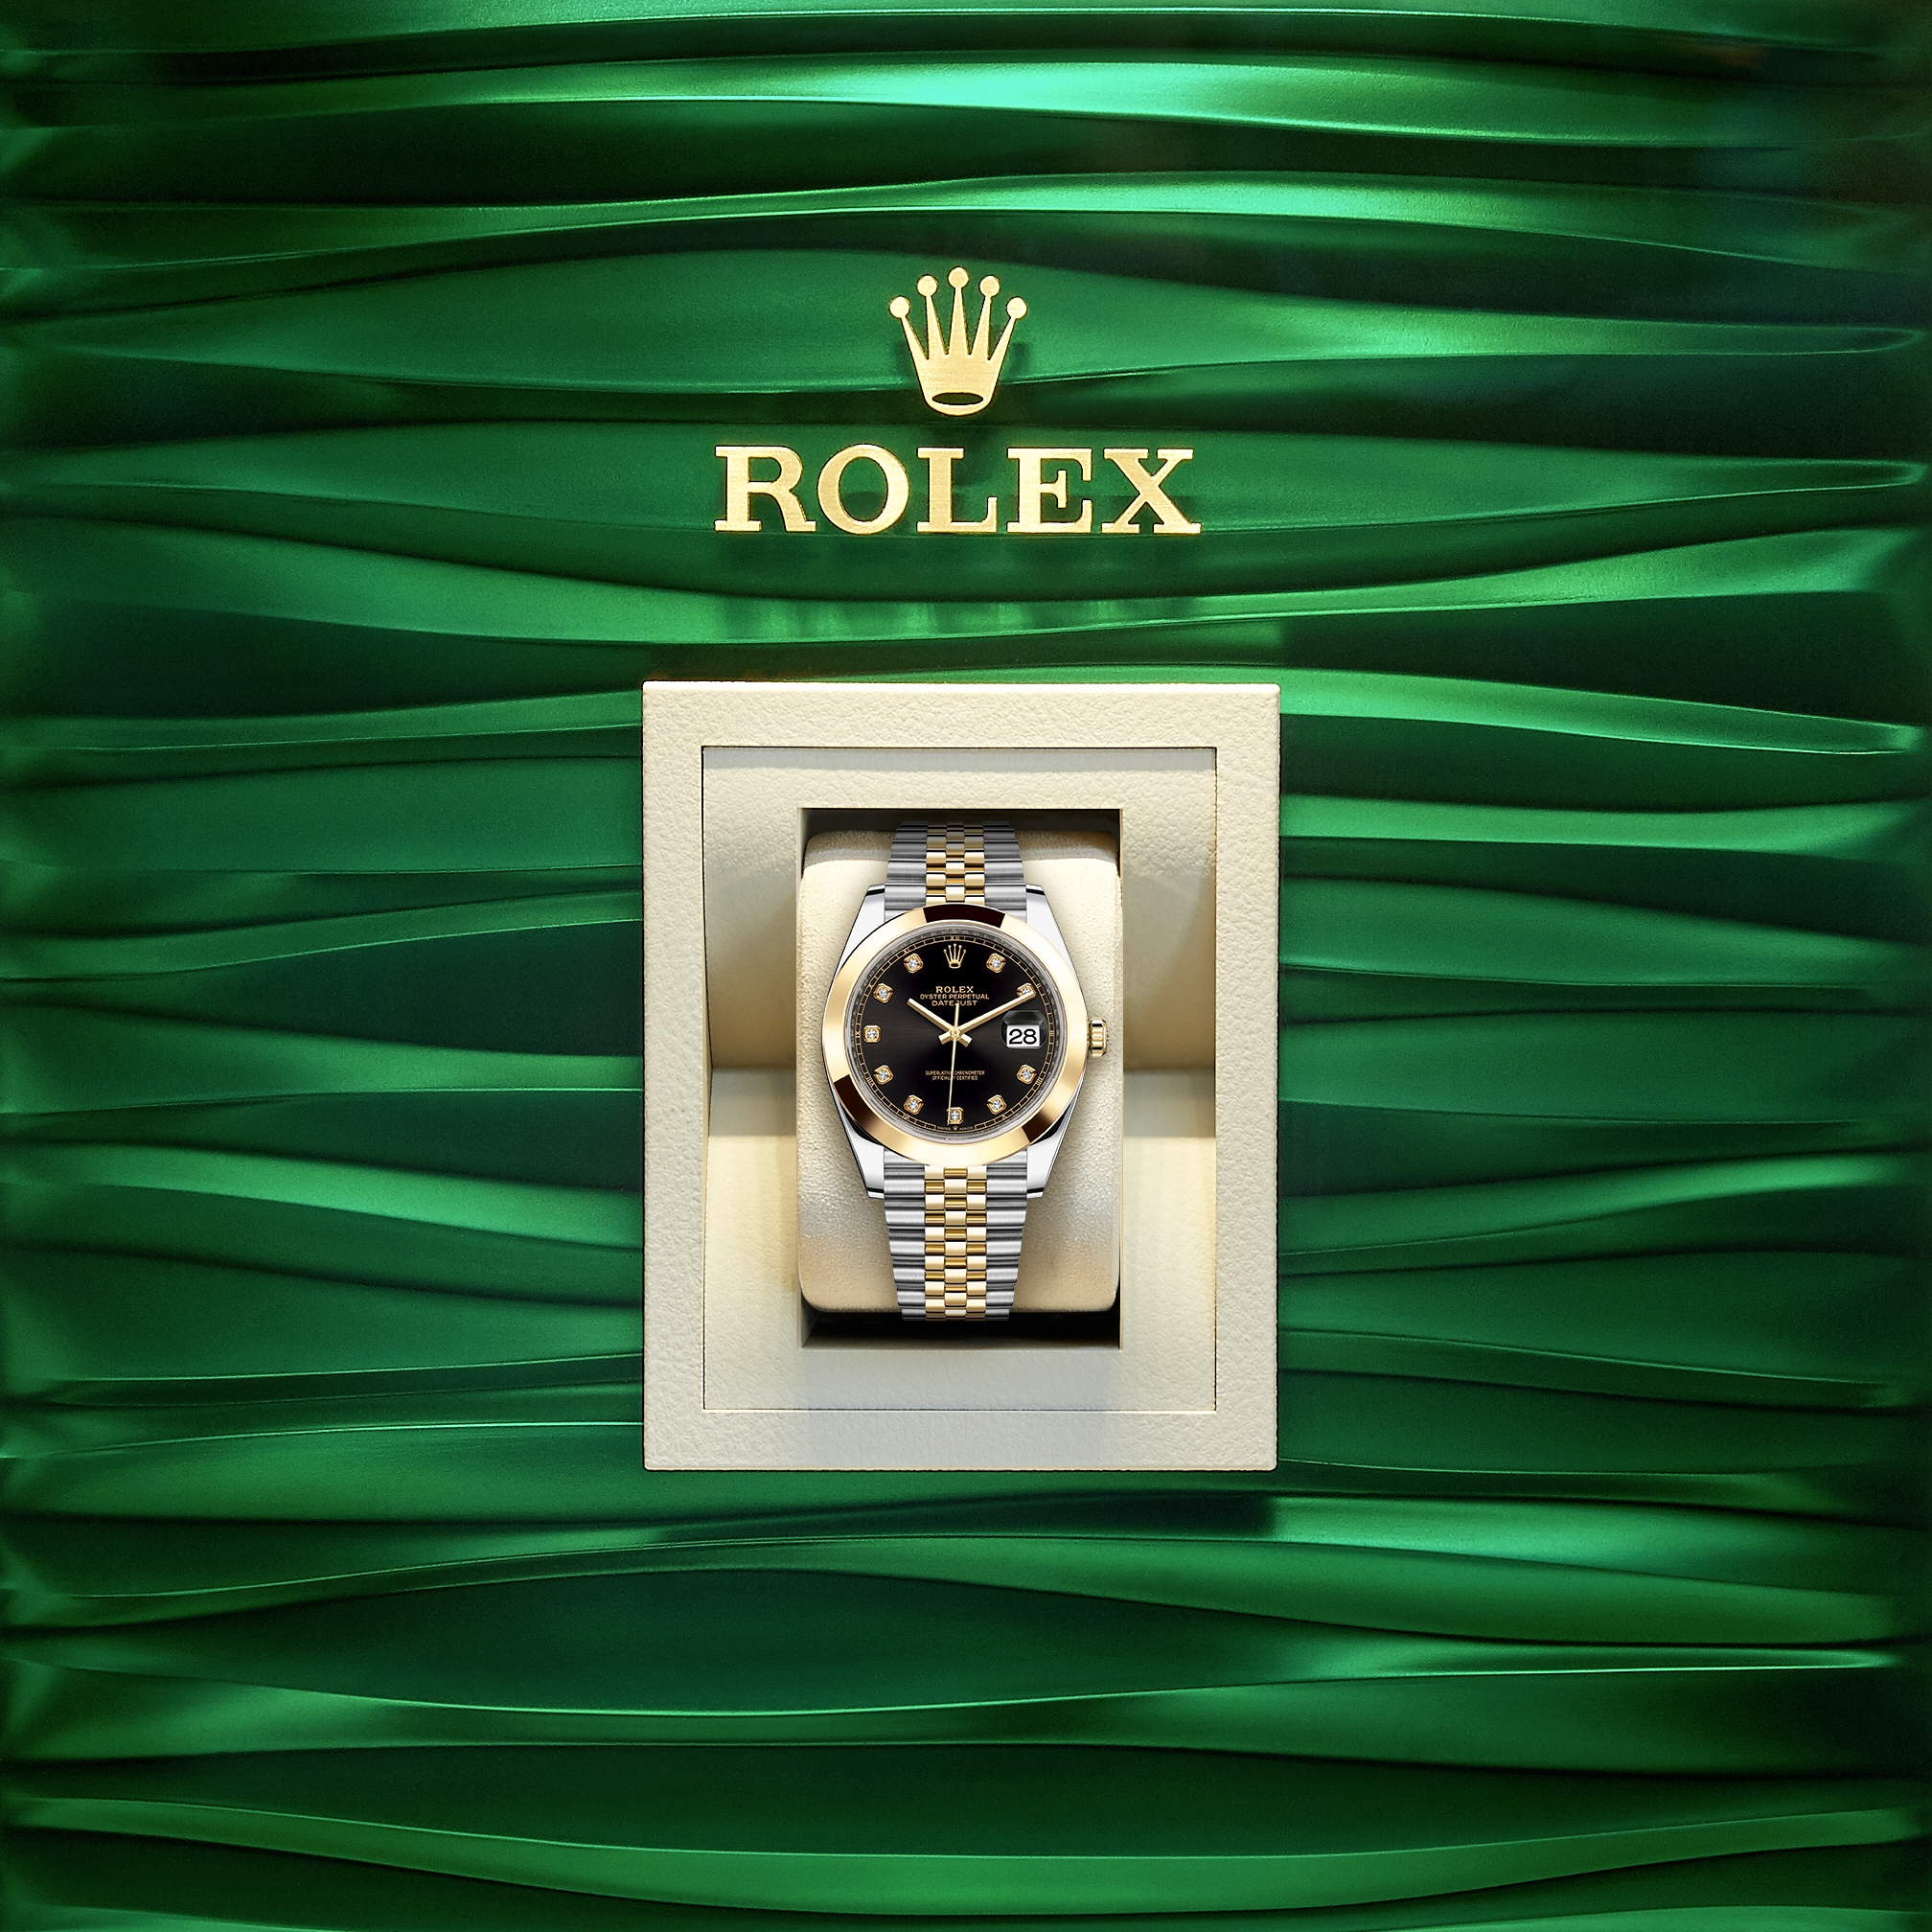 Rolex Big ovetone ref 6098 acier from 1962